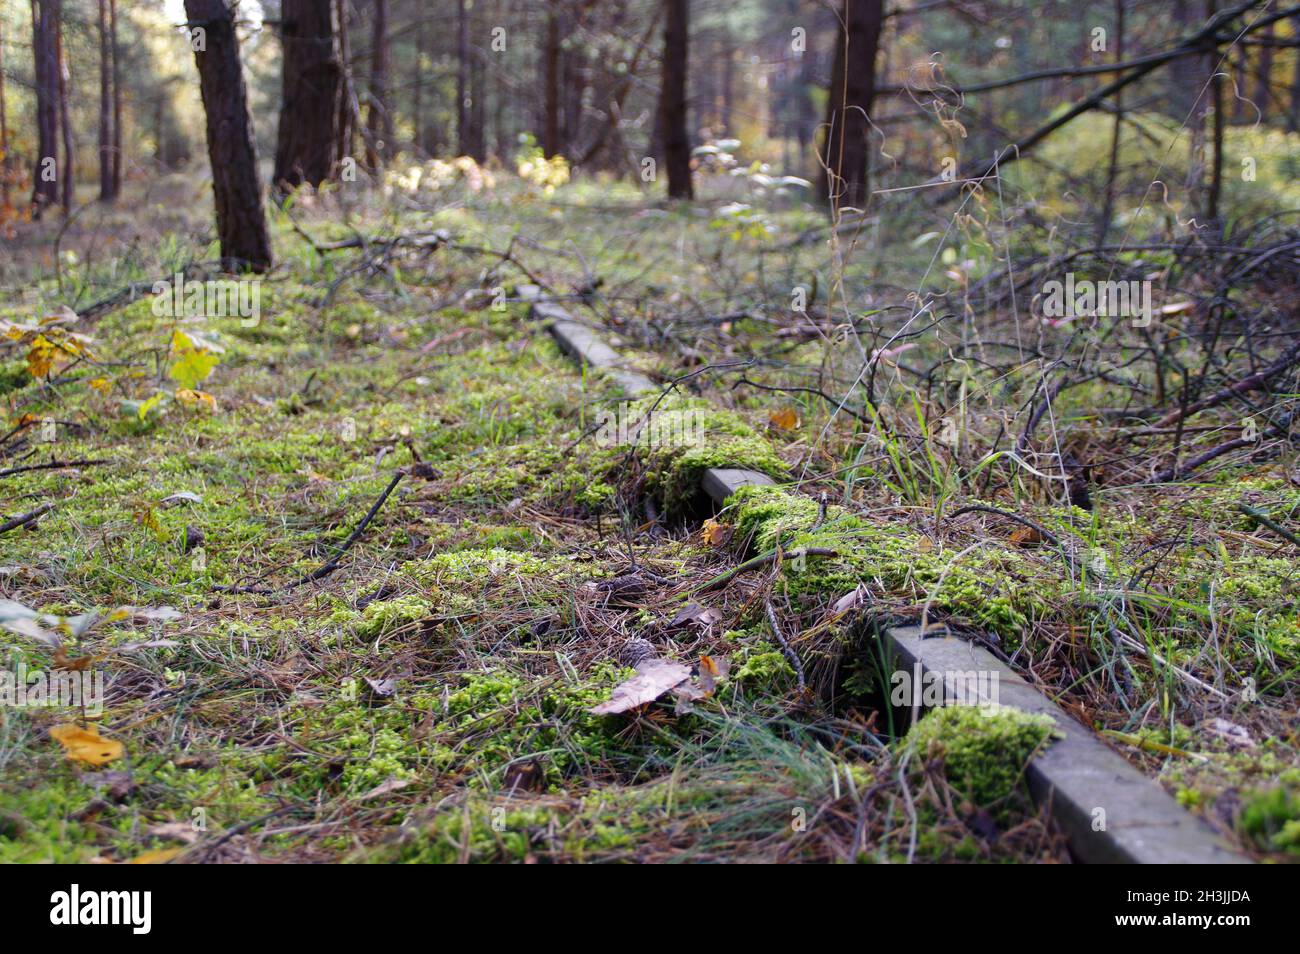 Una vía de ferrocarril olvidada en el bosque. Moss en un carril oxidado. Camino abandonado. Foto de stock